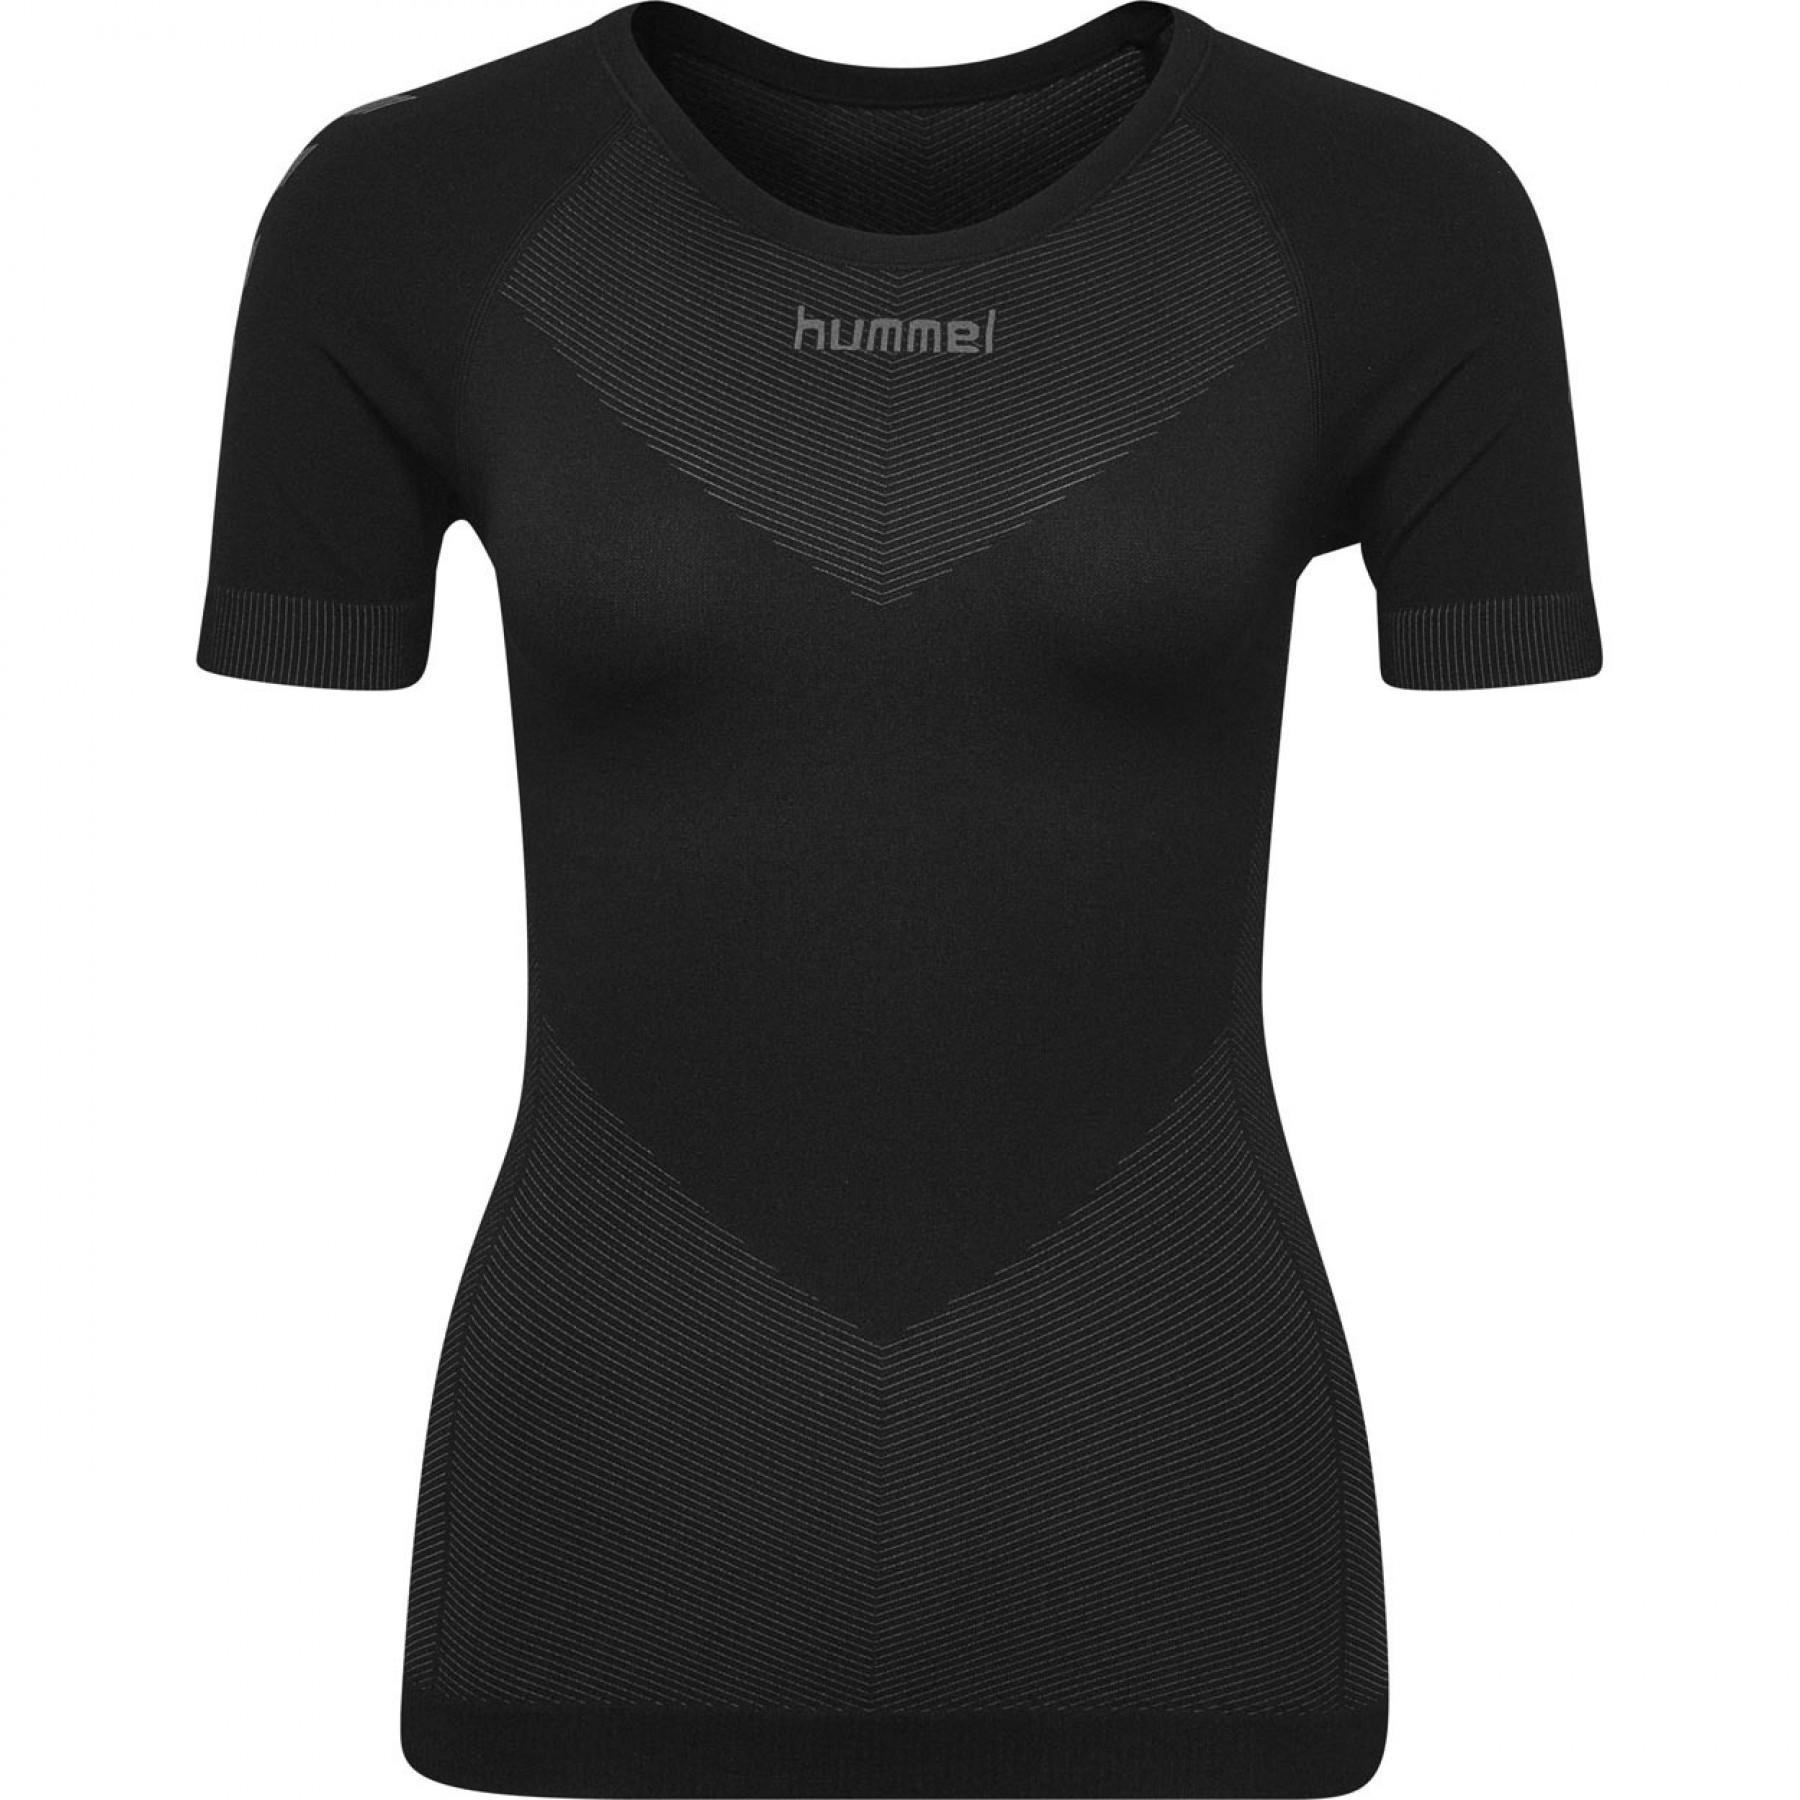 Jersey Hummel femme First Seamless - Jerseys - Women's wear